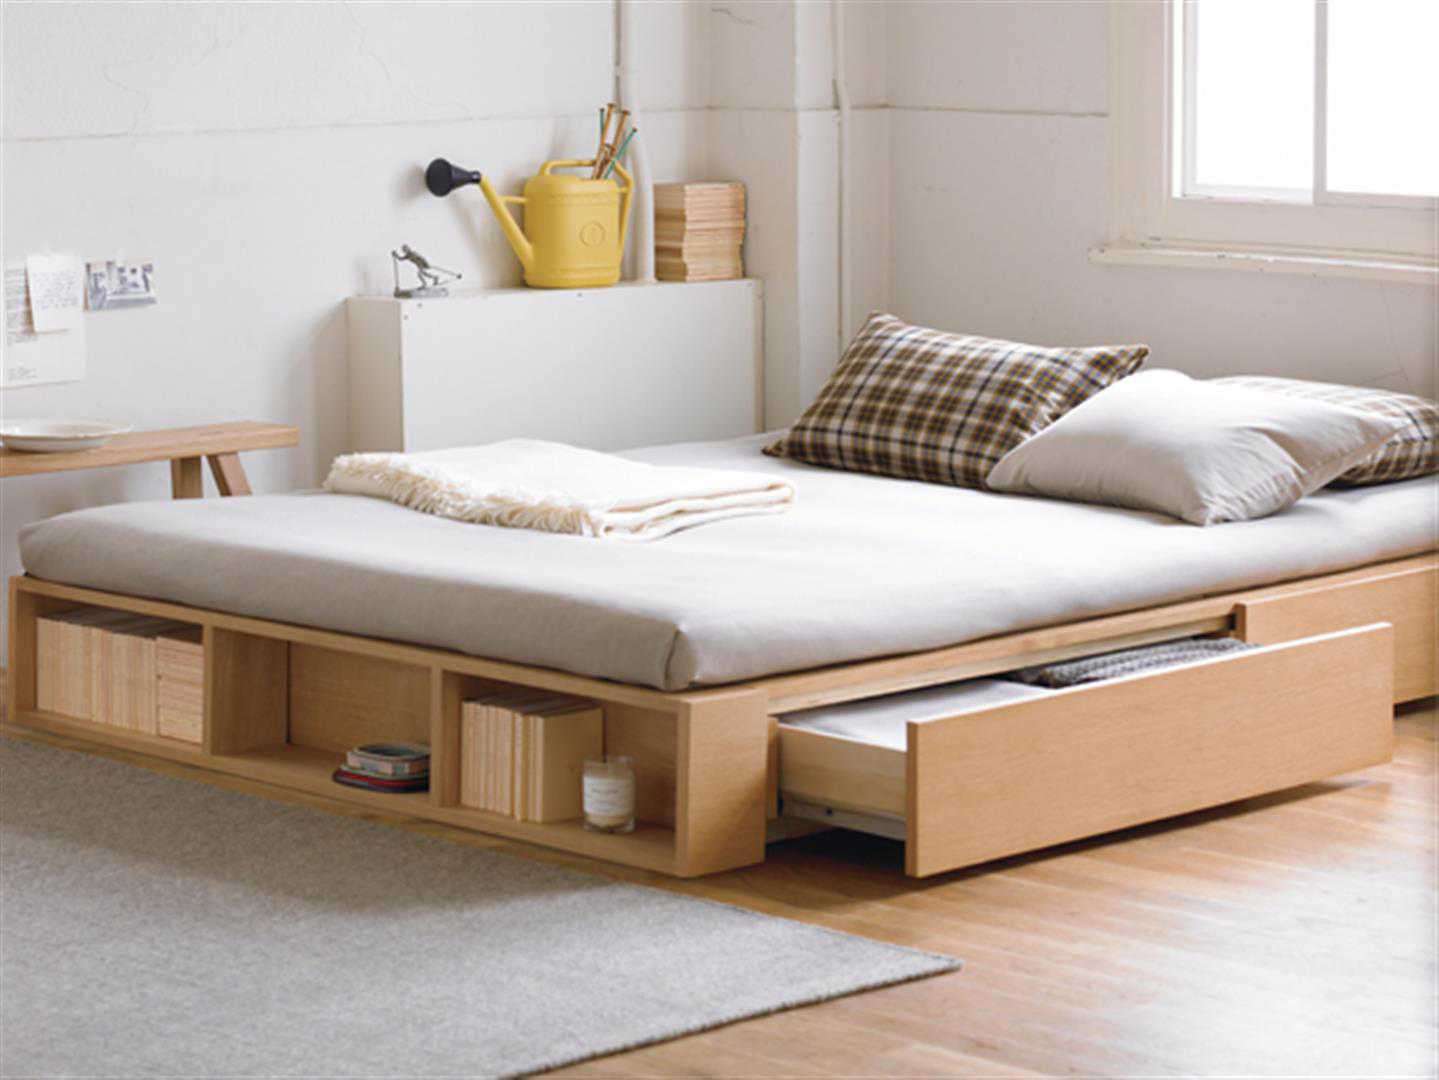 Chọn giường ngủ tích hợp ngăn kéo là lựa chọn thông minh giúp lưu trữ đồ đạc một cách tiện ích